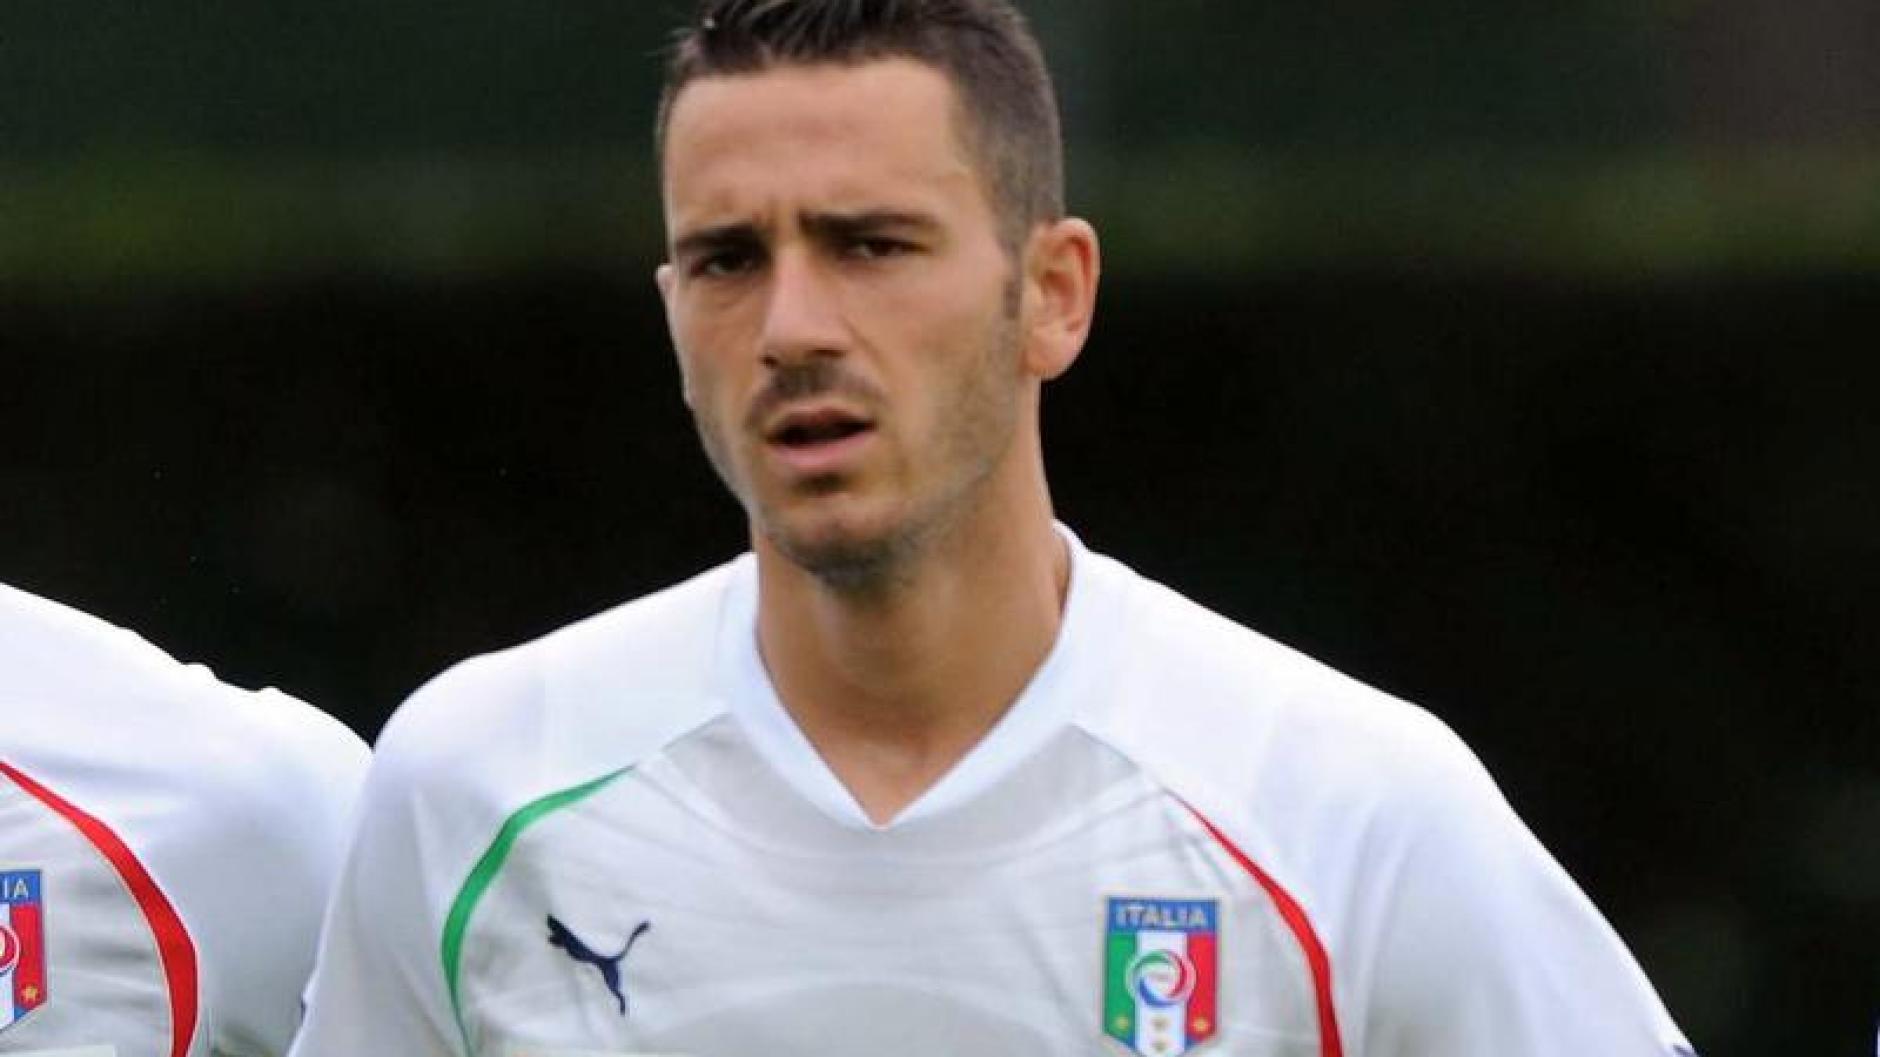 EM 2012: Italien: EM-Spieler Leonardo Bonucci im Visier ...